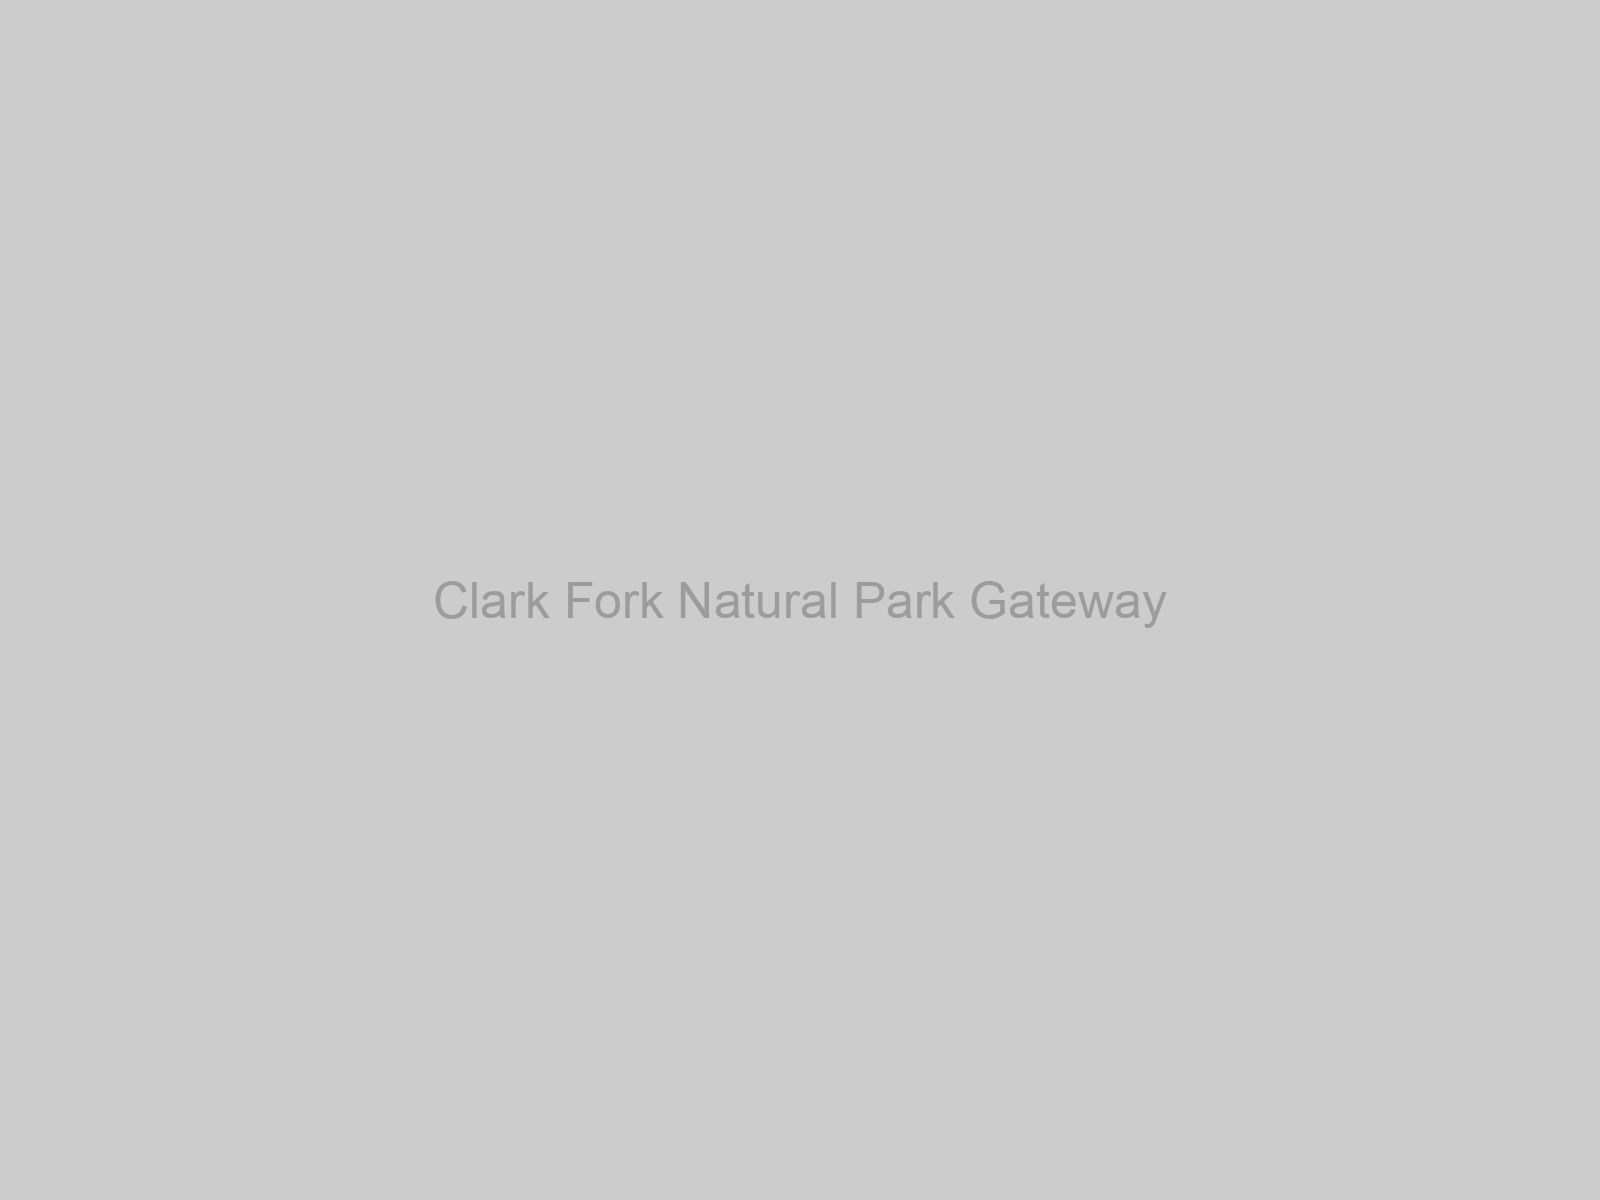 Clark Fork Natural Park Gateway